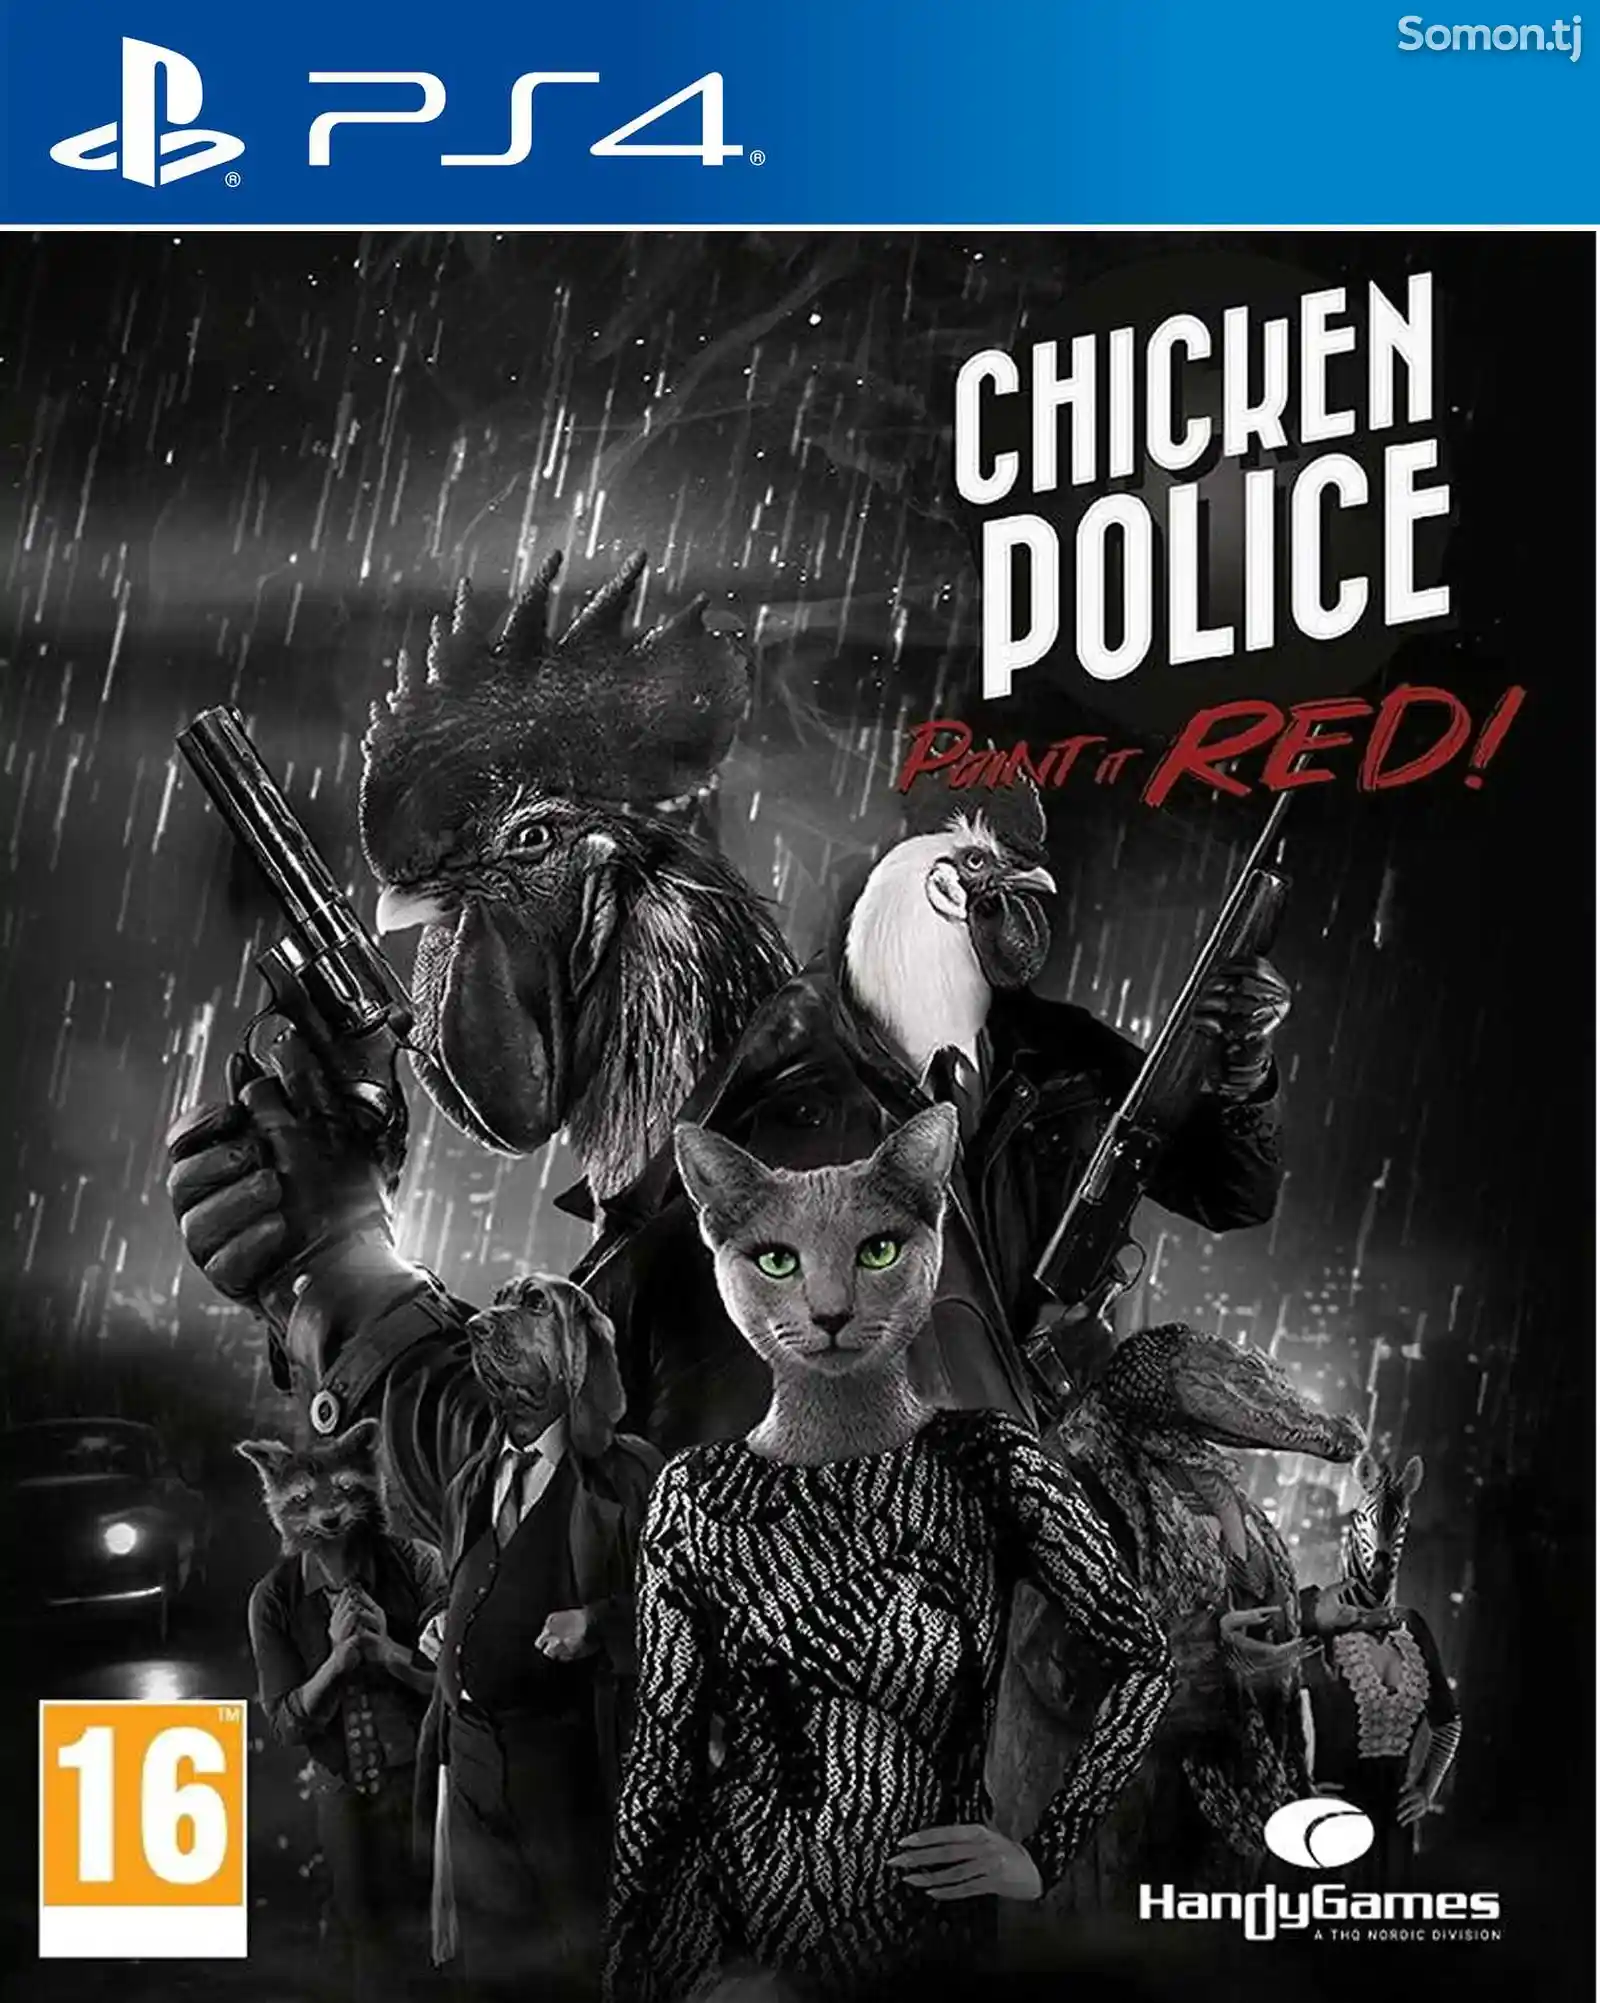 Игра Chicken police для PS-4 / 5.05 / 6.72 / 7.02 / 7.55 / 9.00 /-1